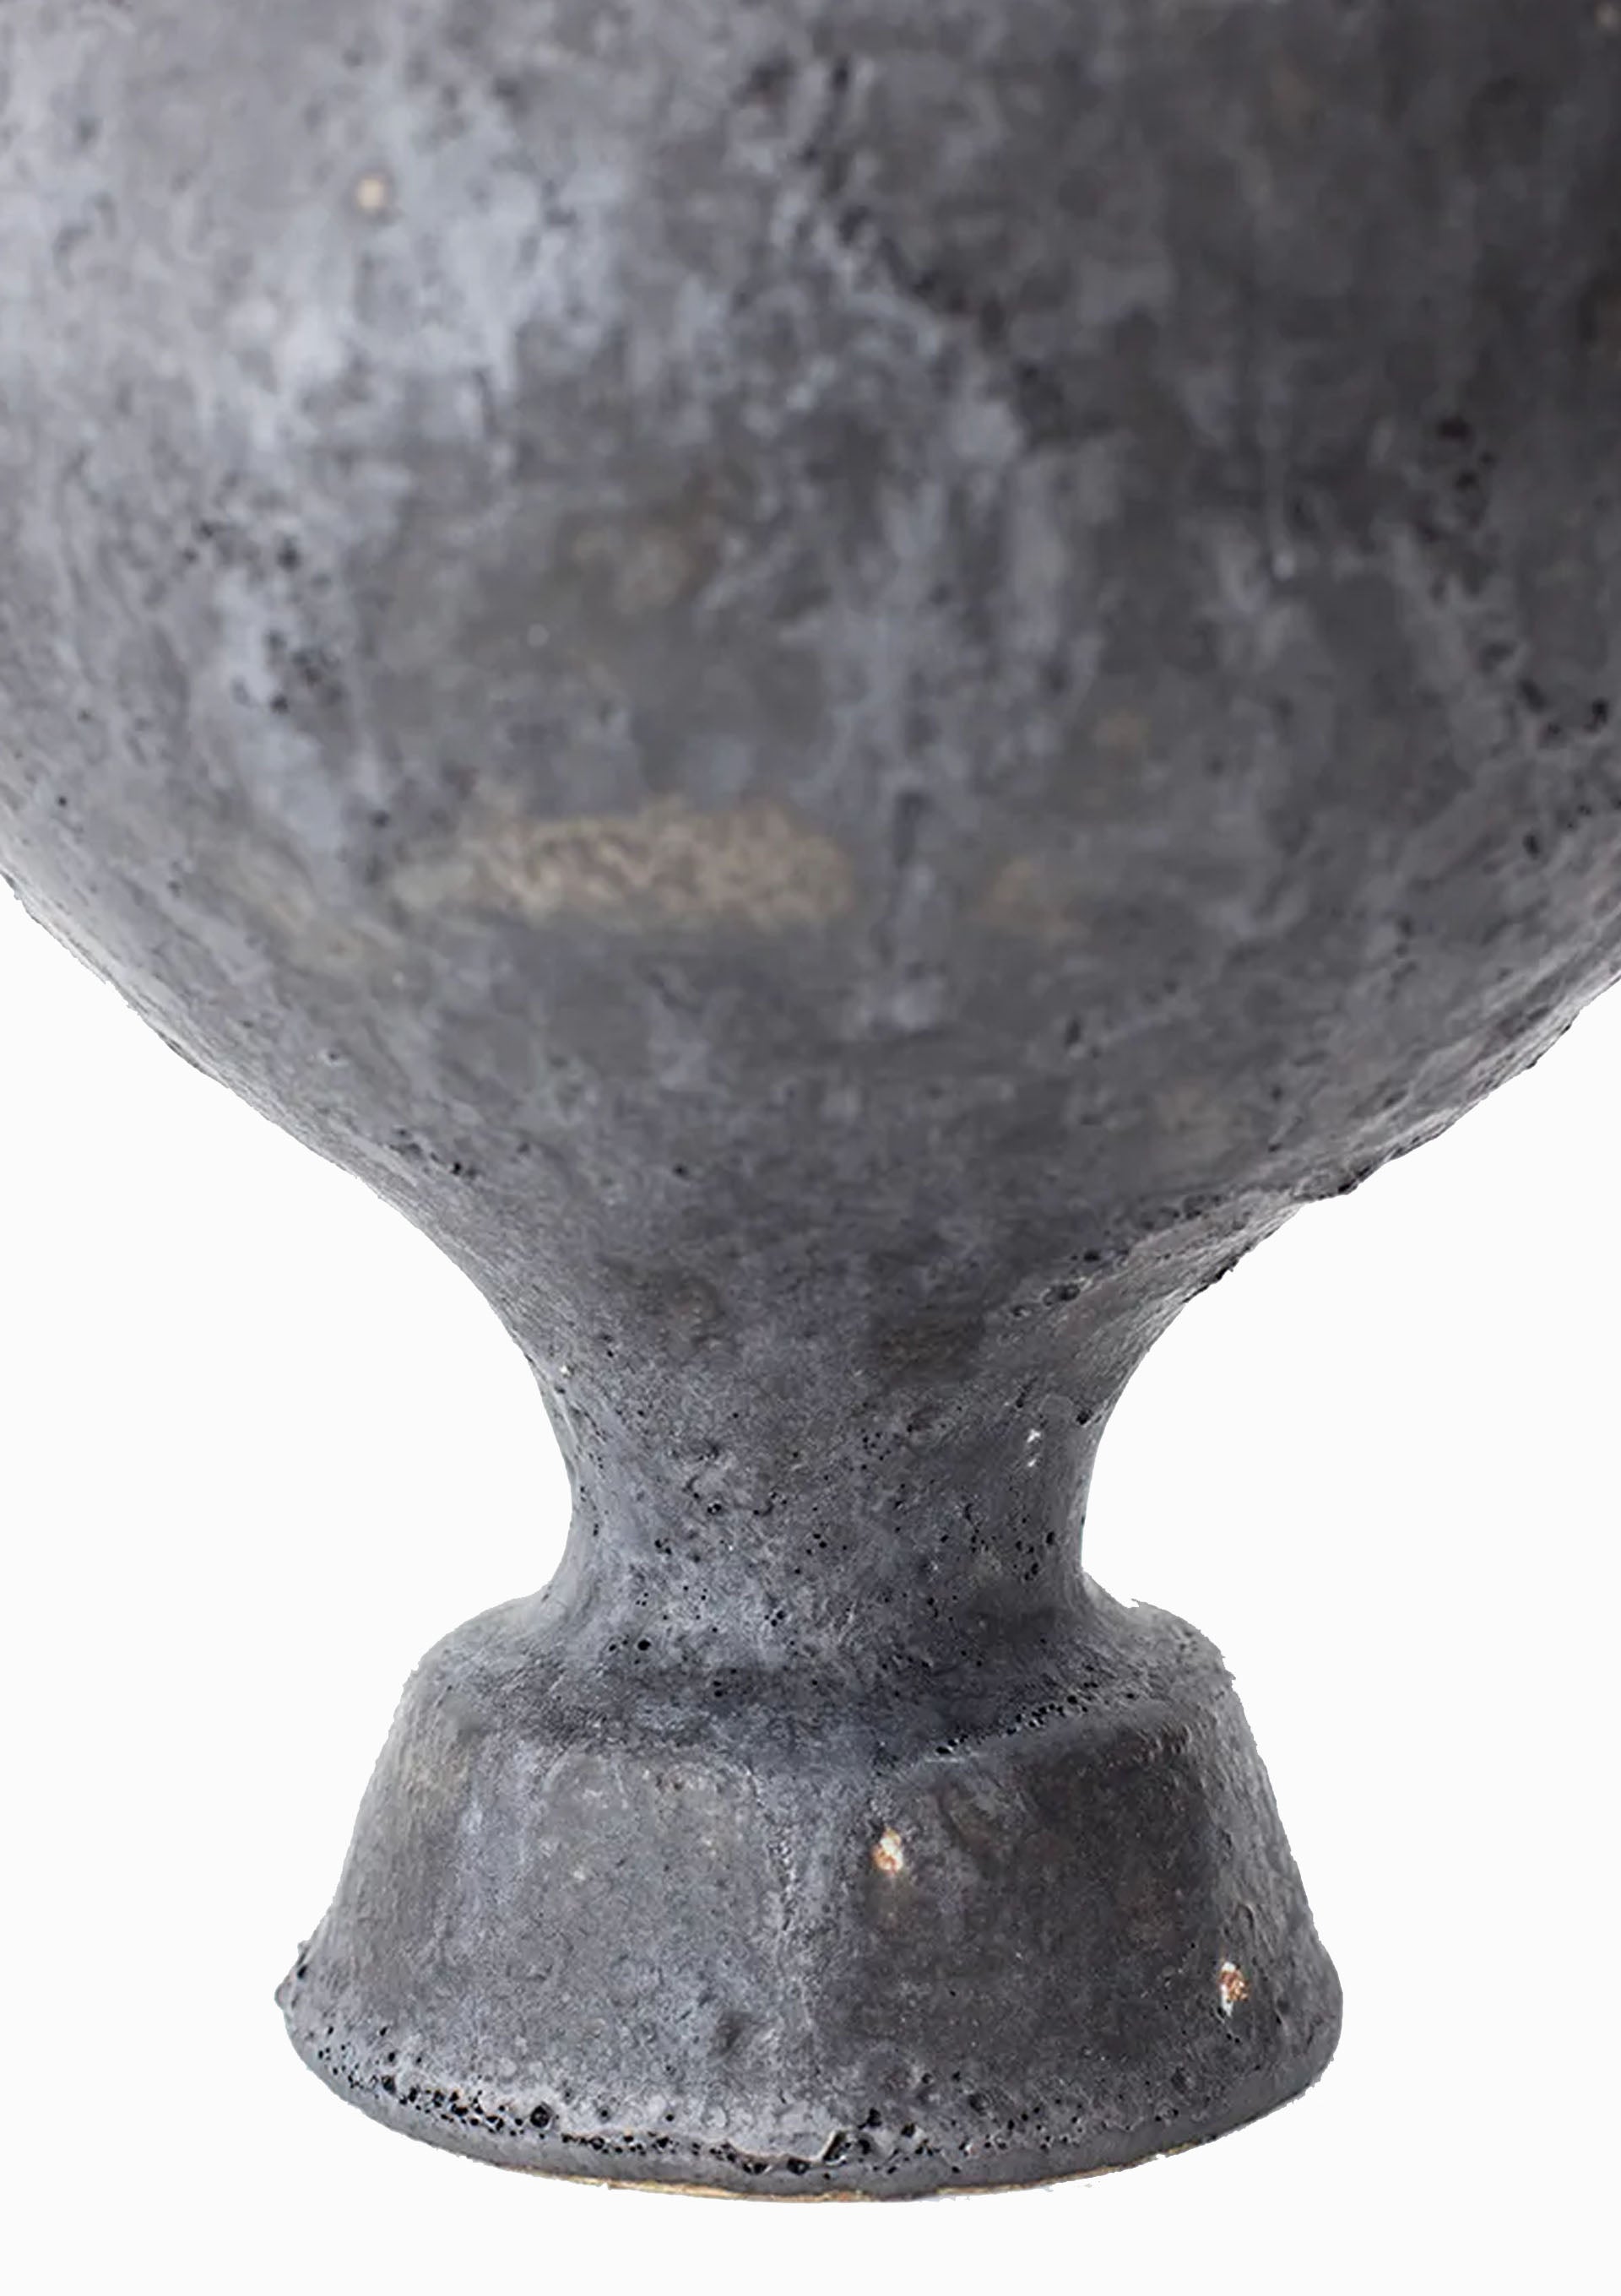 Lekytho Vase